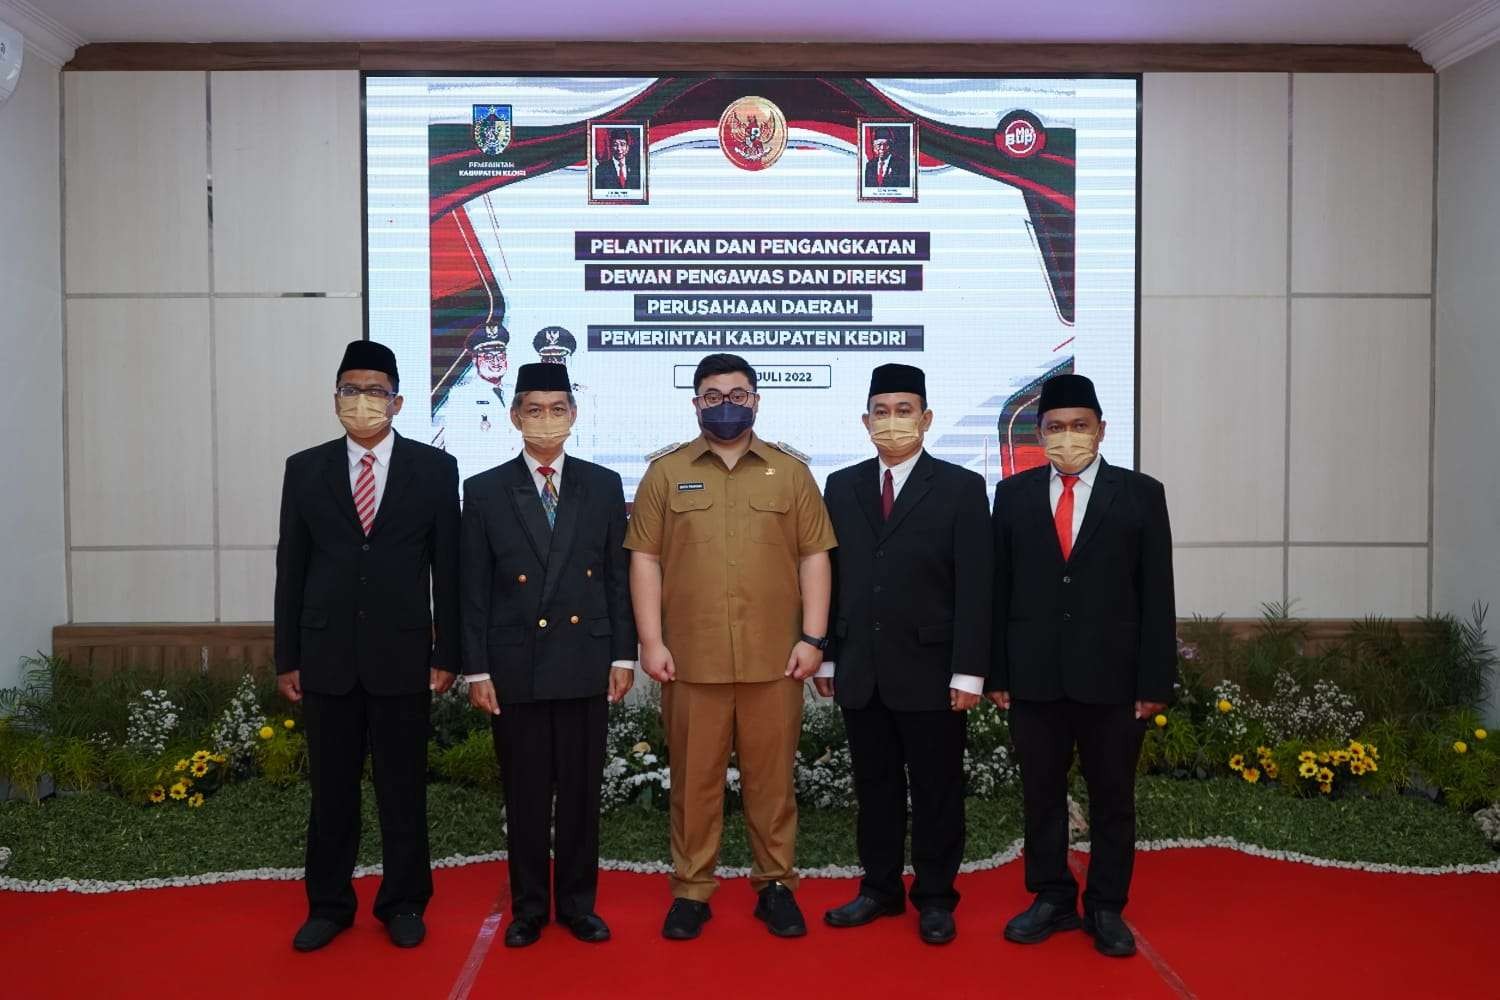 Bupati Kabupaten Kediri Hanindhito Himawan Pramana bersama Dewan Pengawas dan direksi BUMD Kabupaten Kediri. (Foto: Istimewa)